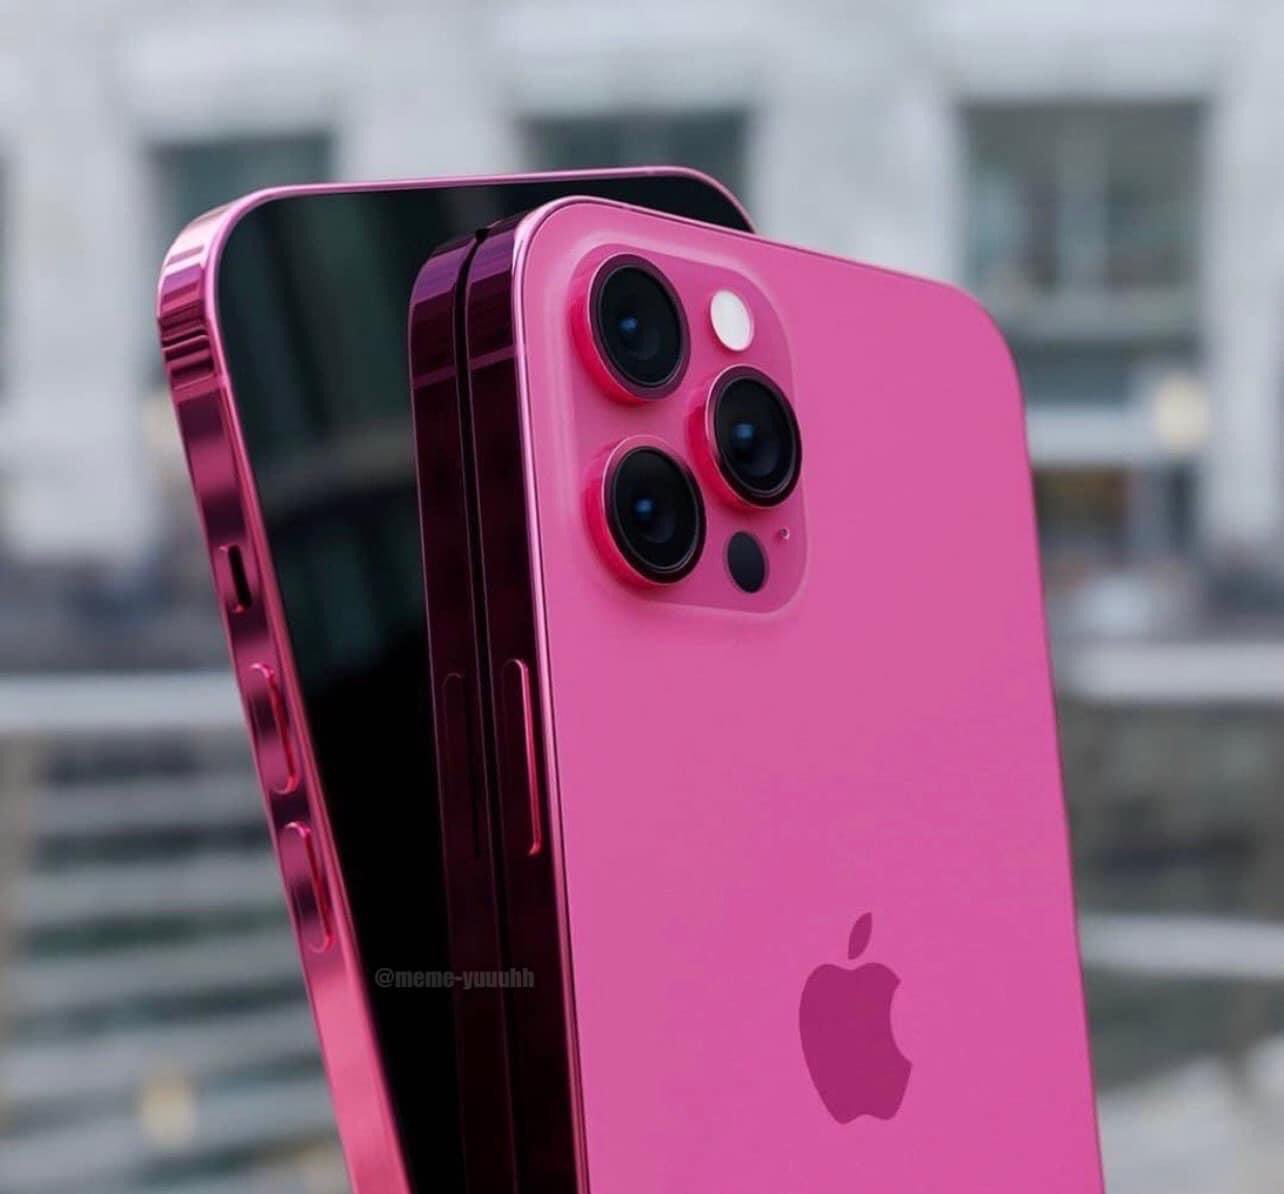 iPhone 13 (màu hồng): Bạn đang tìm kiếm một chiếc smartphone cá tính với màu sắc nổi bật? Nhất là màu hồng? Vậy thì iPhone 13 màu hồng chính là sự lựa chọn hoàn hảo cho bạn. Với màu sắc độc đáo, cấu hình mạnh mẽ và chất lượng camera đỉnh cao, chiếc iPhone 13 màu hồng sẽ khiến bạn không thể rời mắt khỏi hình ảnh được liên quan đến từ khóa \